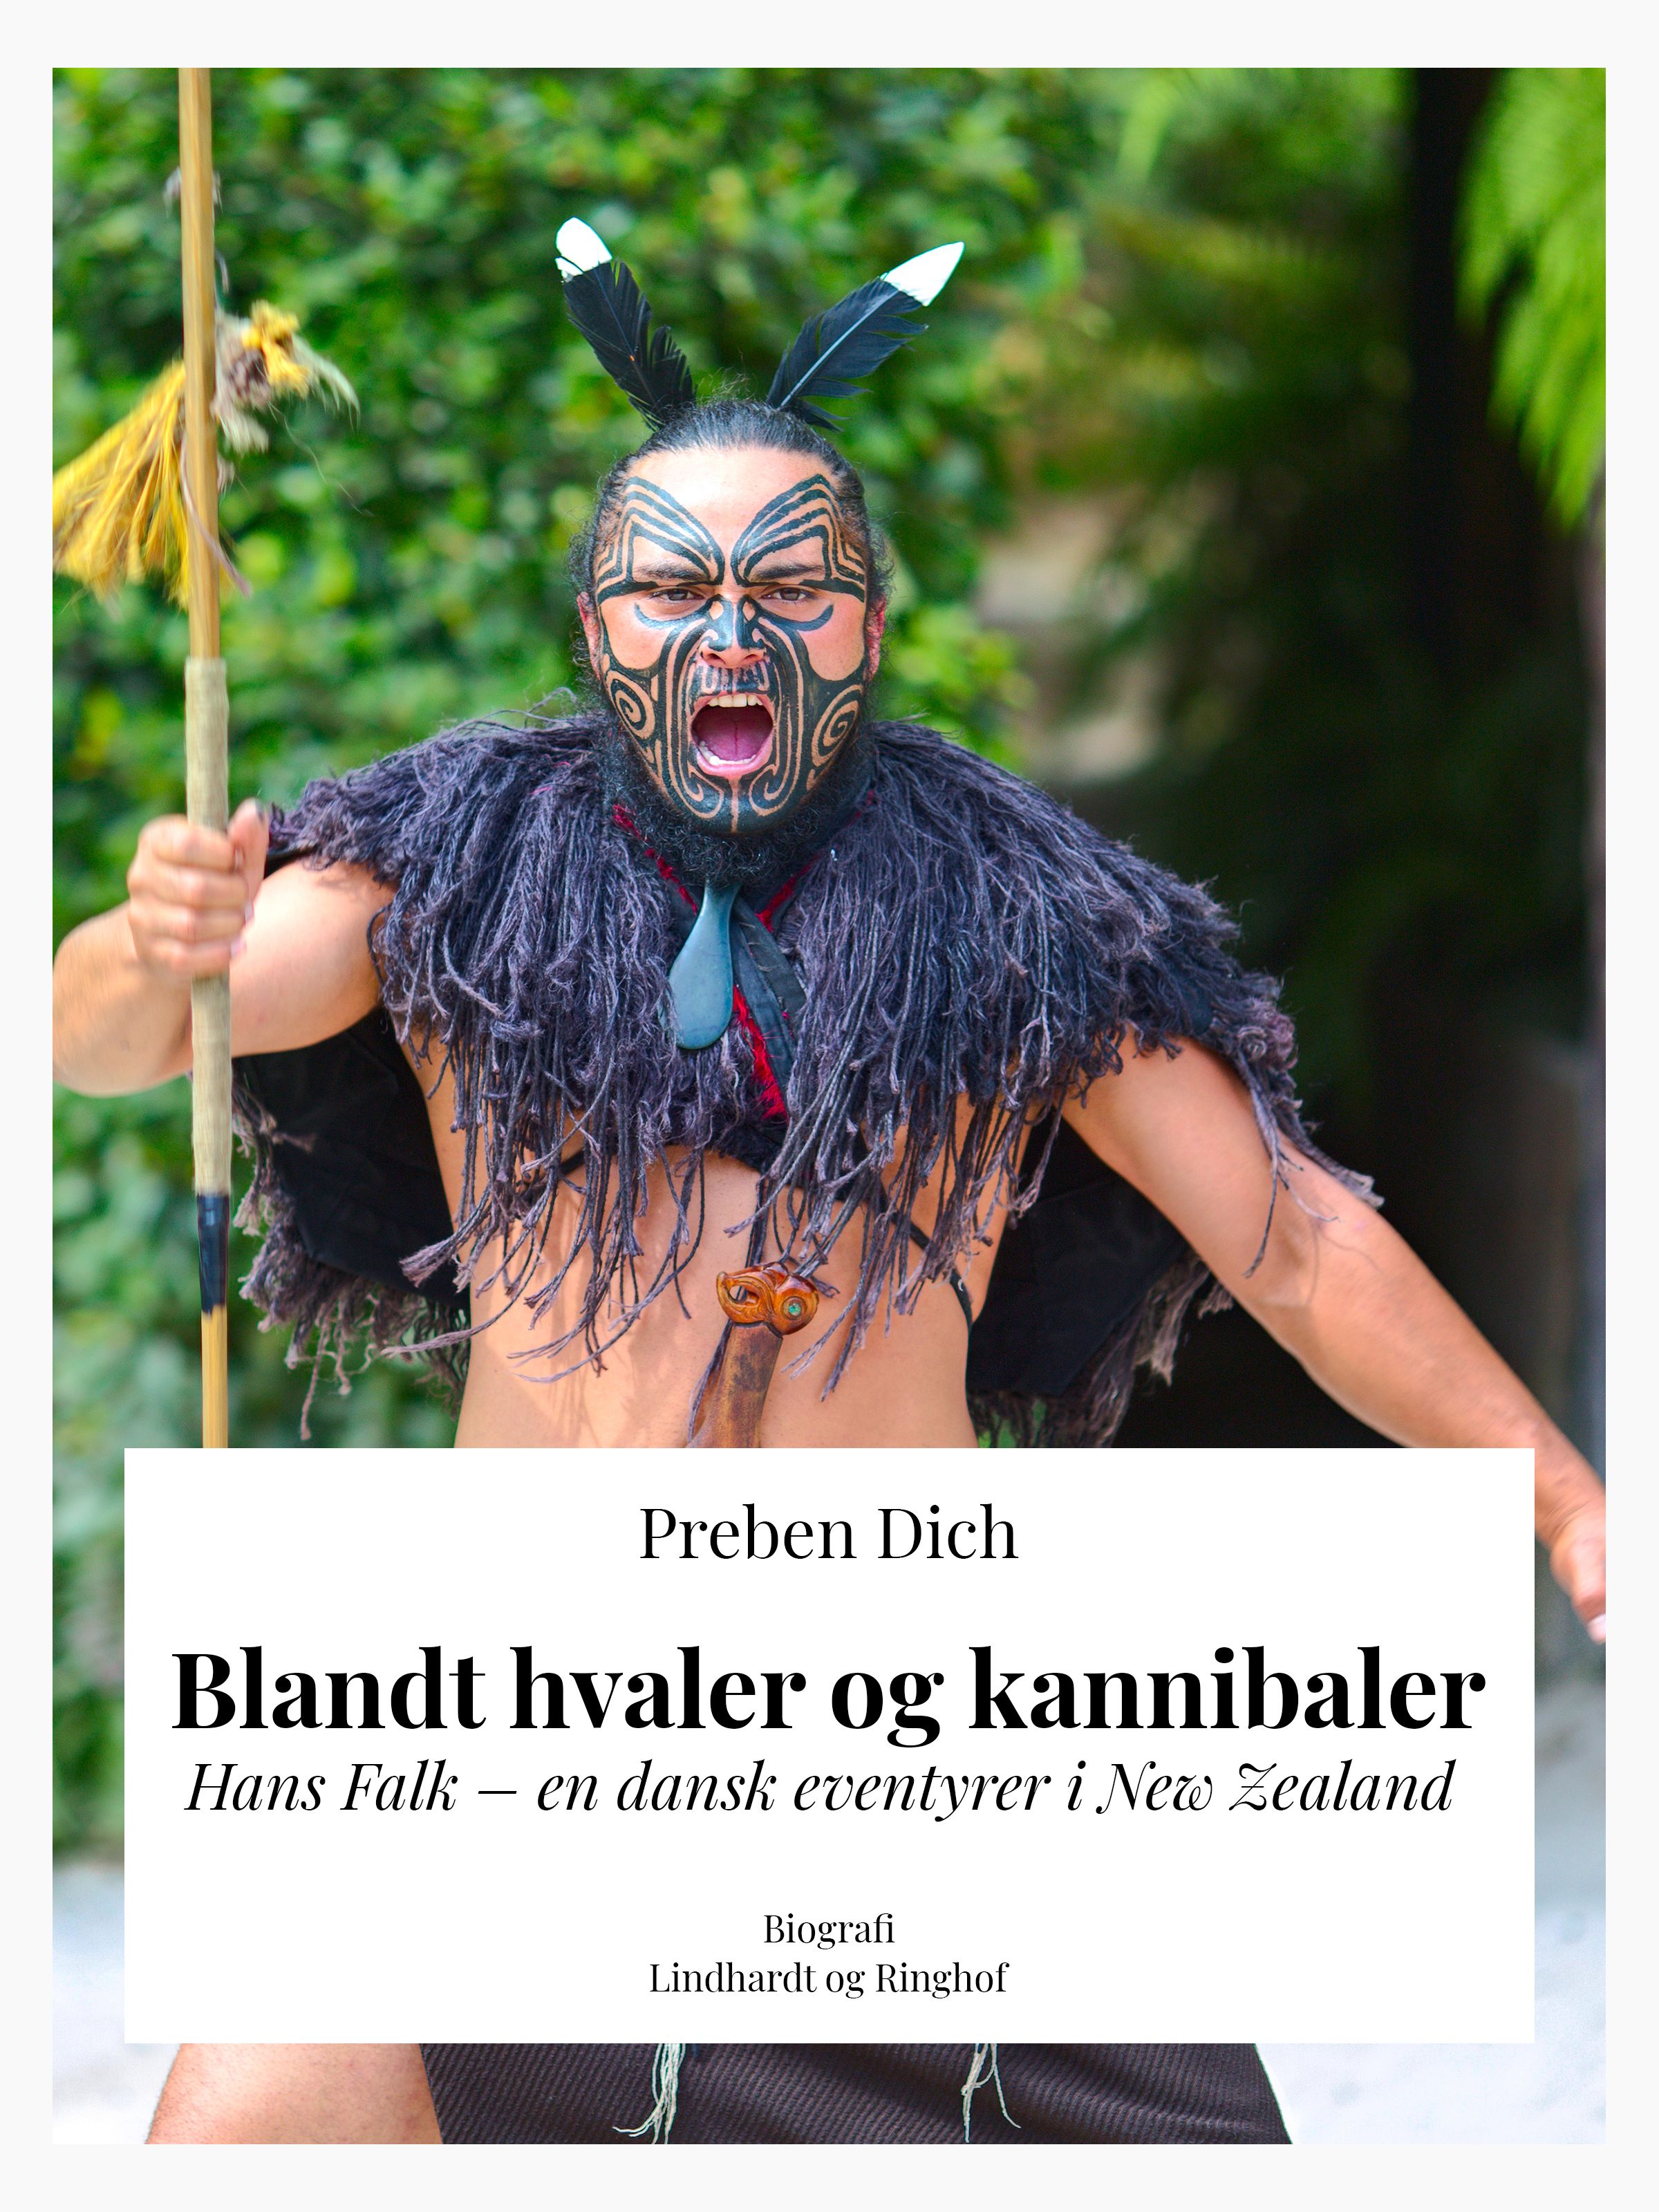 Blandt hvaler og kannibaler. Hans Falk – en dansk eventyrer i New Zealand, e-bog af Preben Helsted Dich